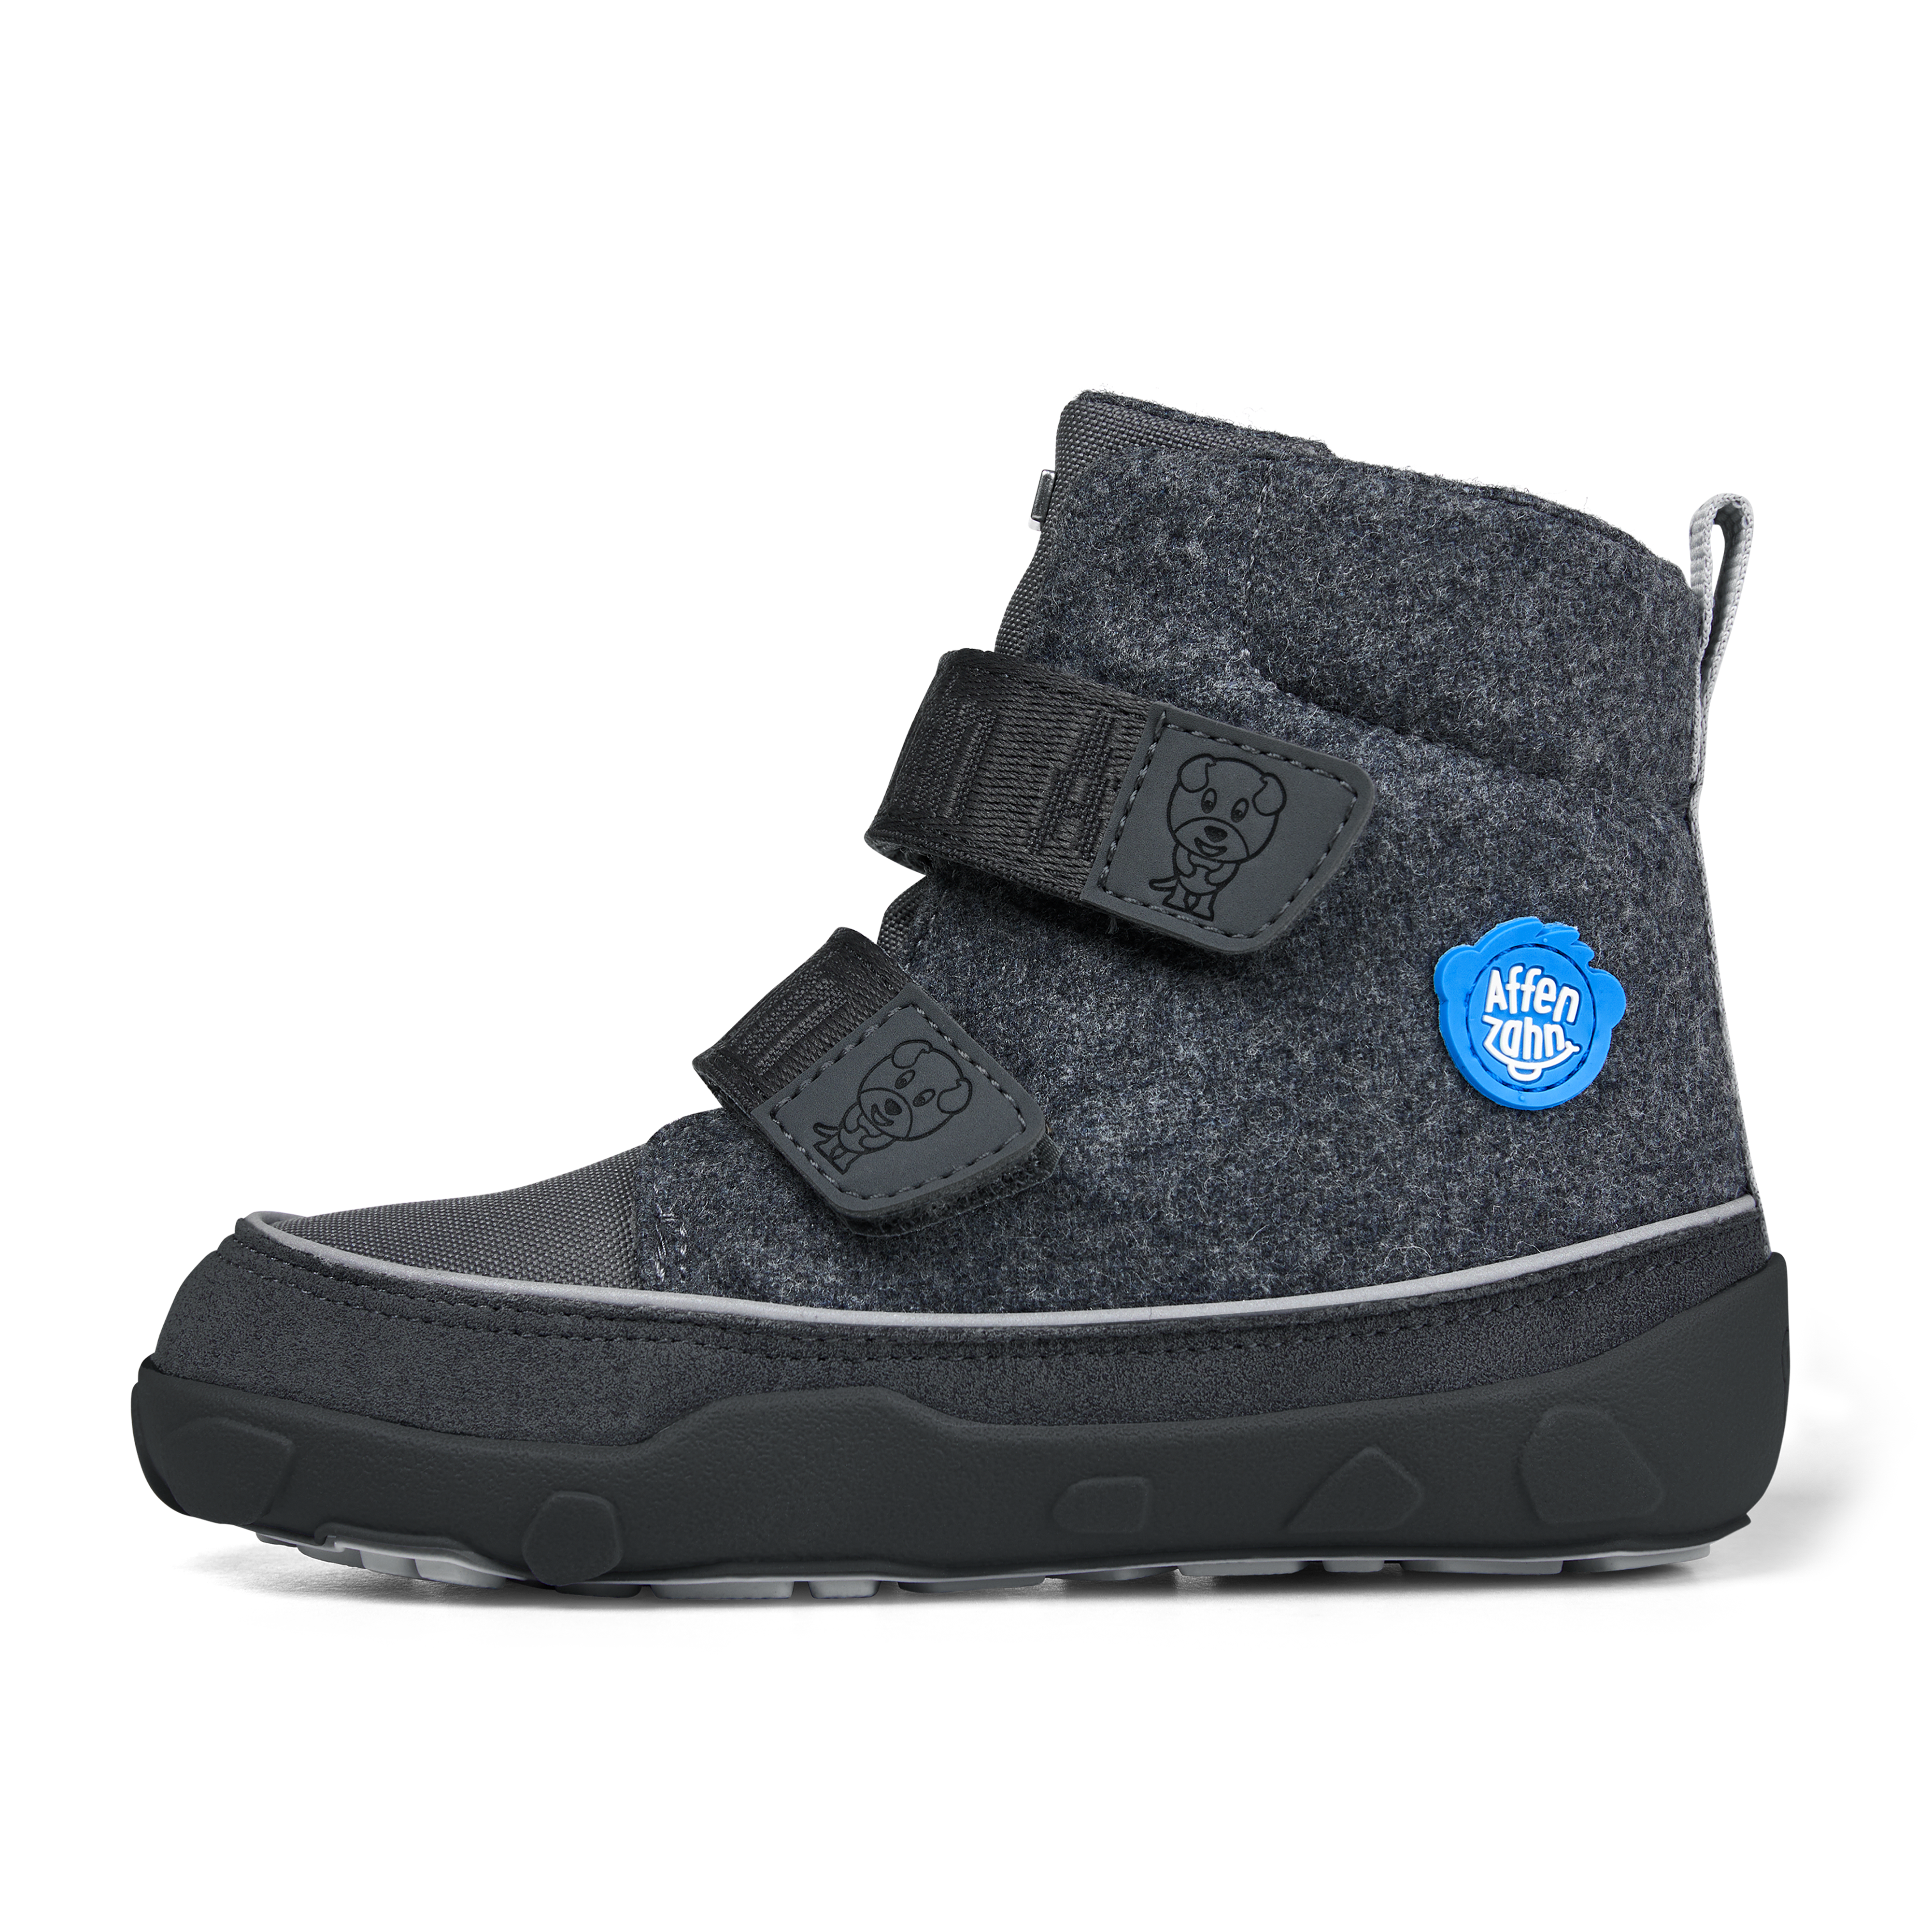 Affenzahn Winter Boot Wool Comfy barfods vinterstøvler til børn i farven dog, yderside